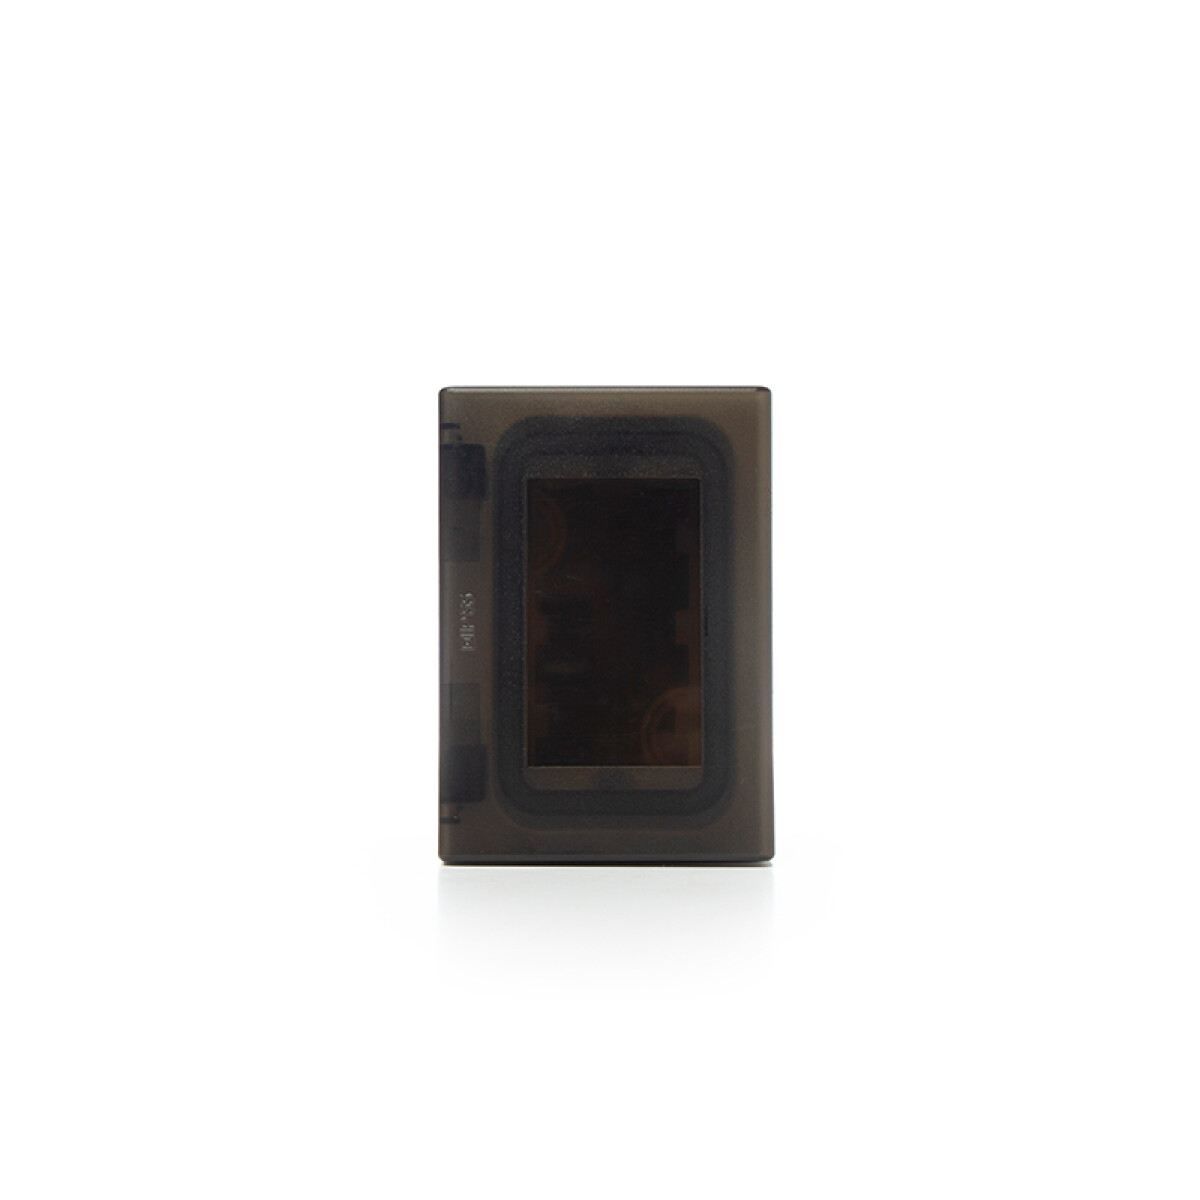 Caja exterior de 3 mód. c/tapa estanca IP55 gris - SK3073 